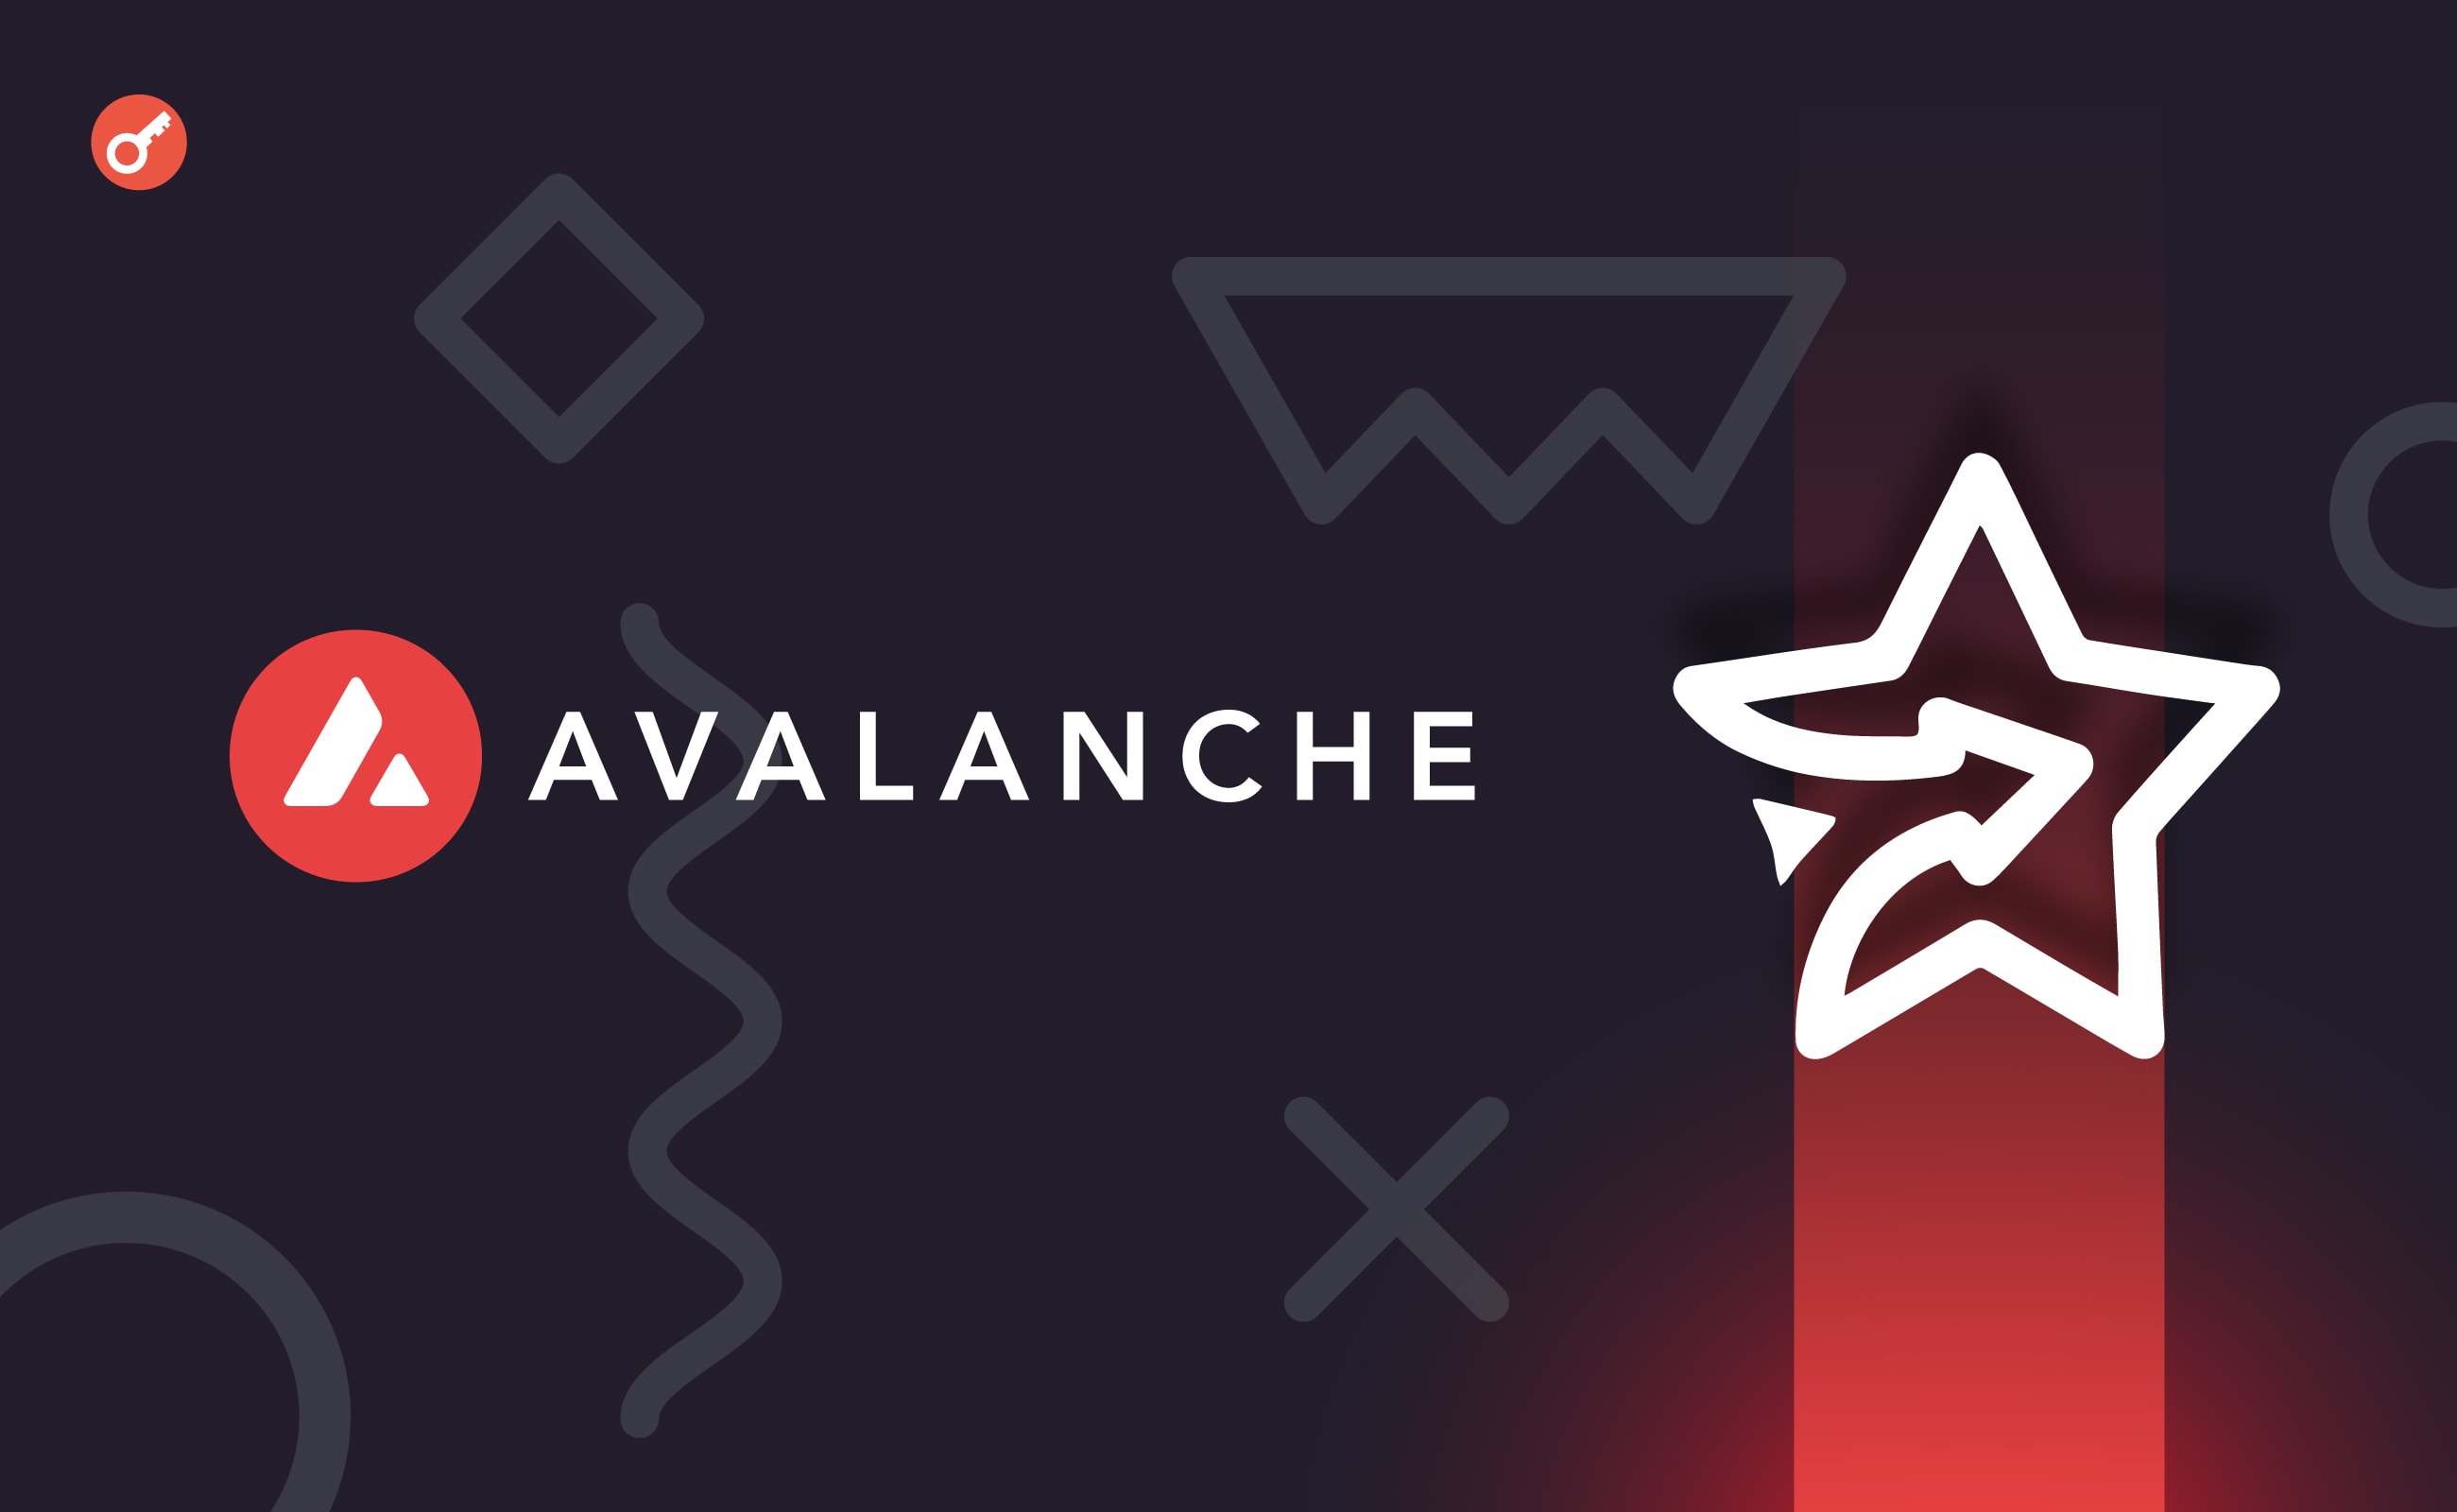 Конкурент friend.tech спричинив сплеск транзакцій у мережі Avalanche. Головний колаж новини.